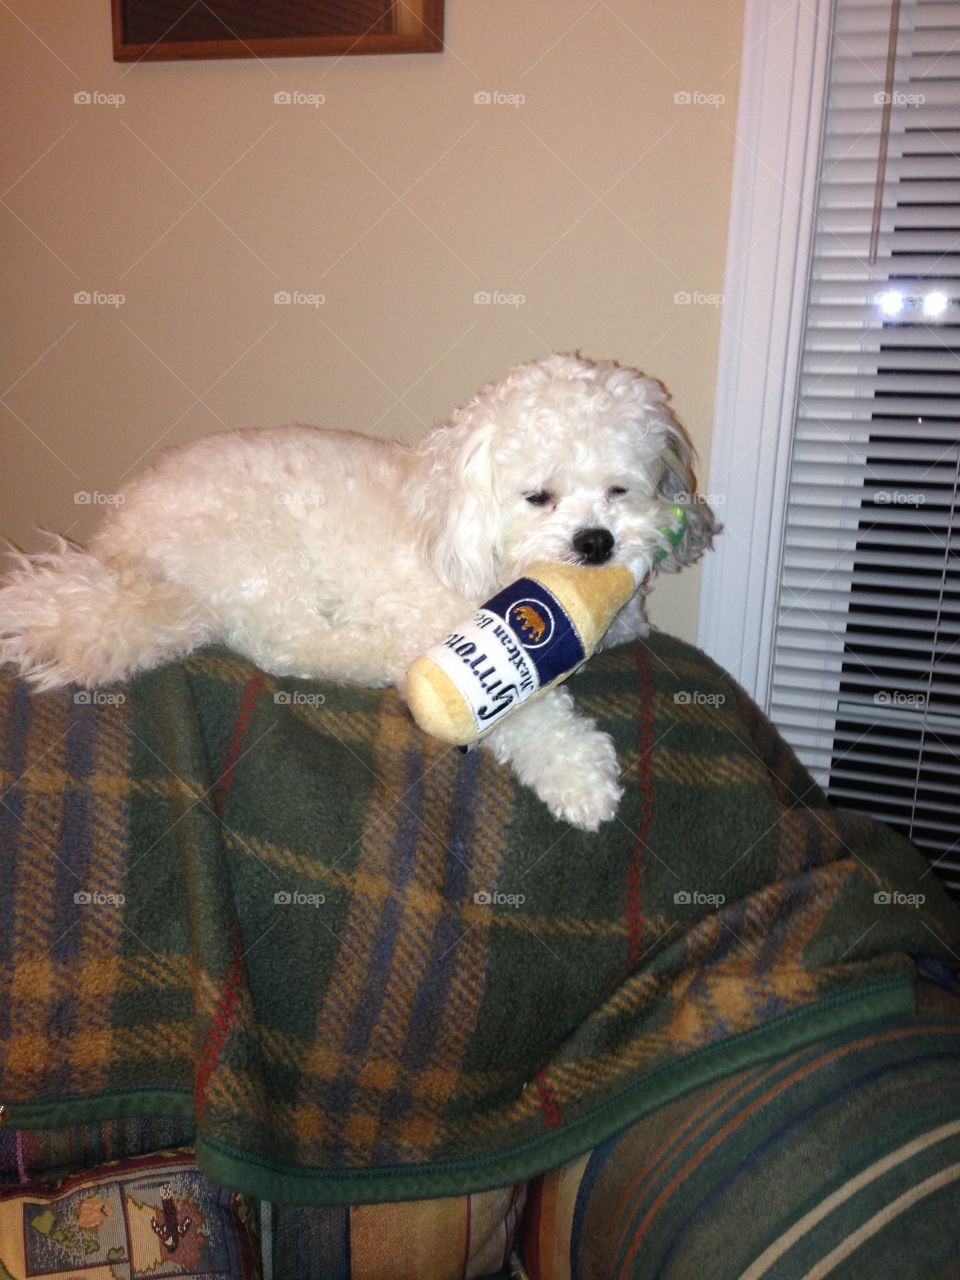 Grrona . Cooper likes beer